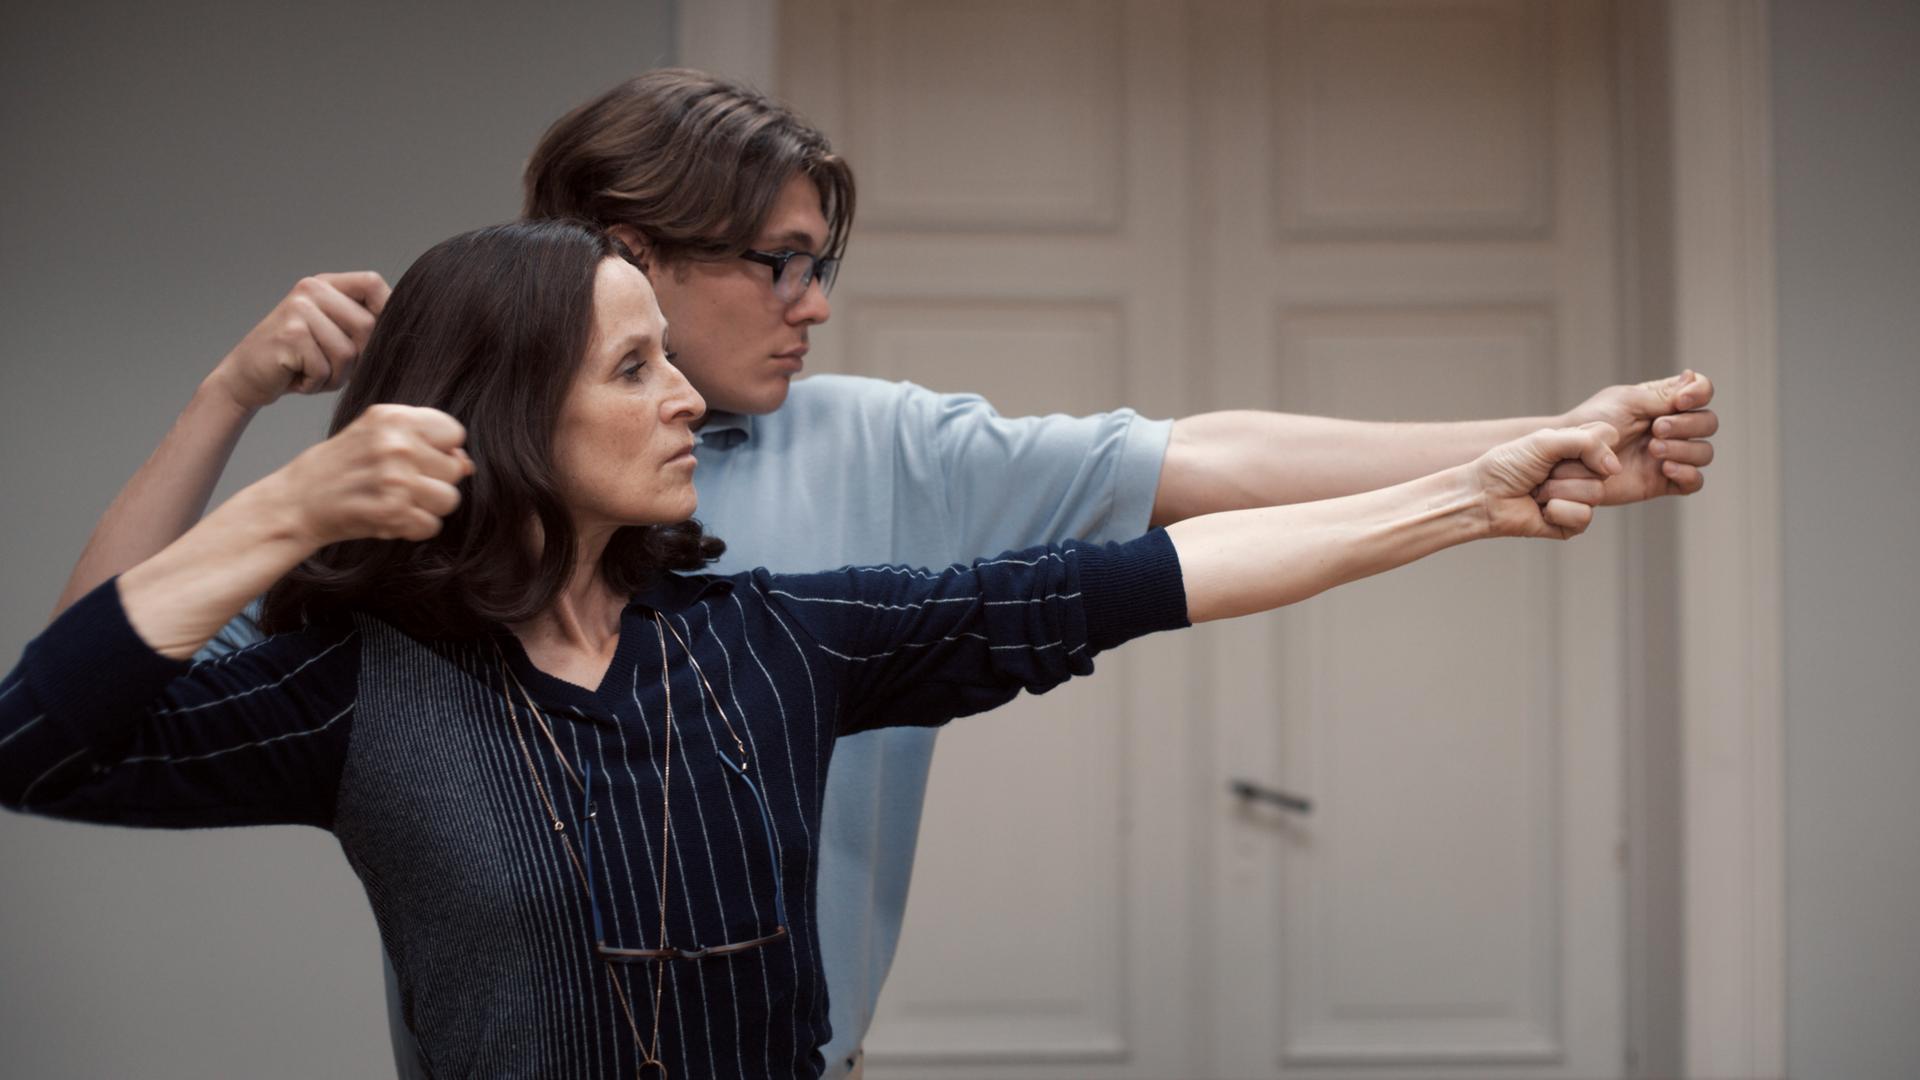 Sophie Rois und Milan Herms spannen in einer Filmszene zusammen einen imaginären Bogen.